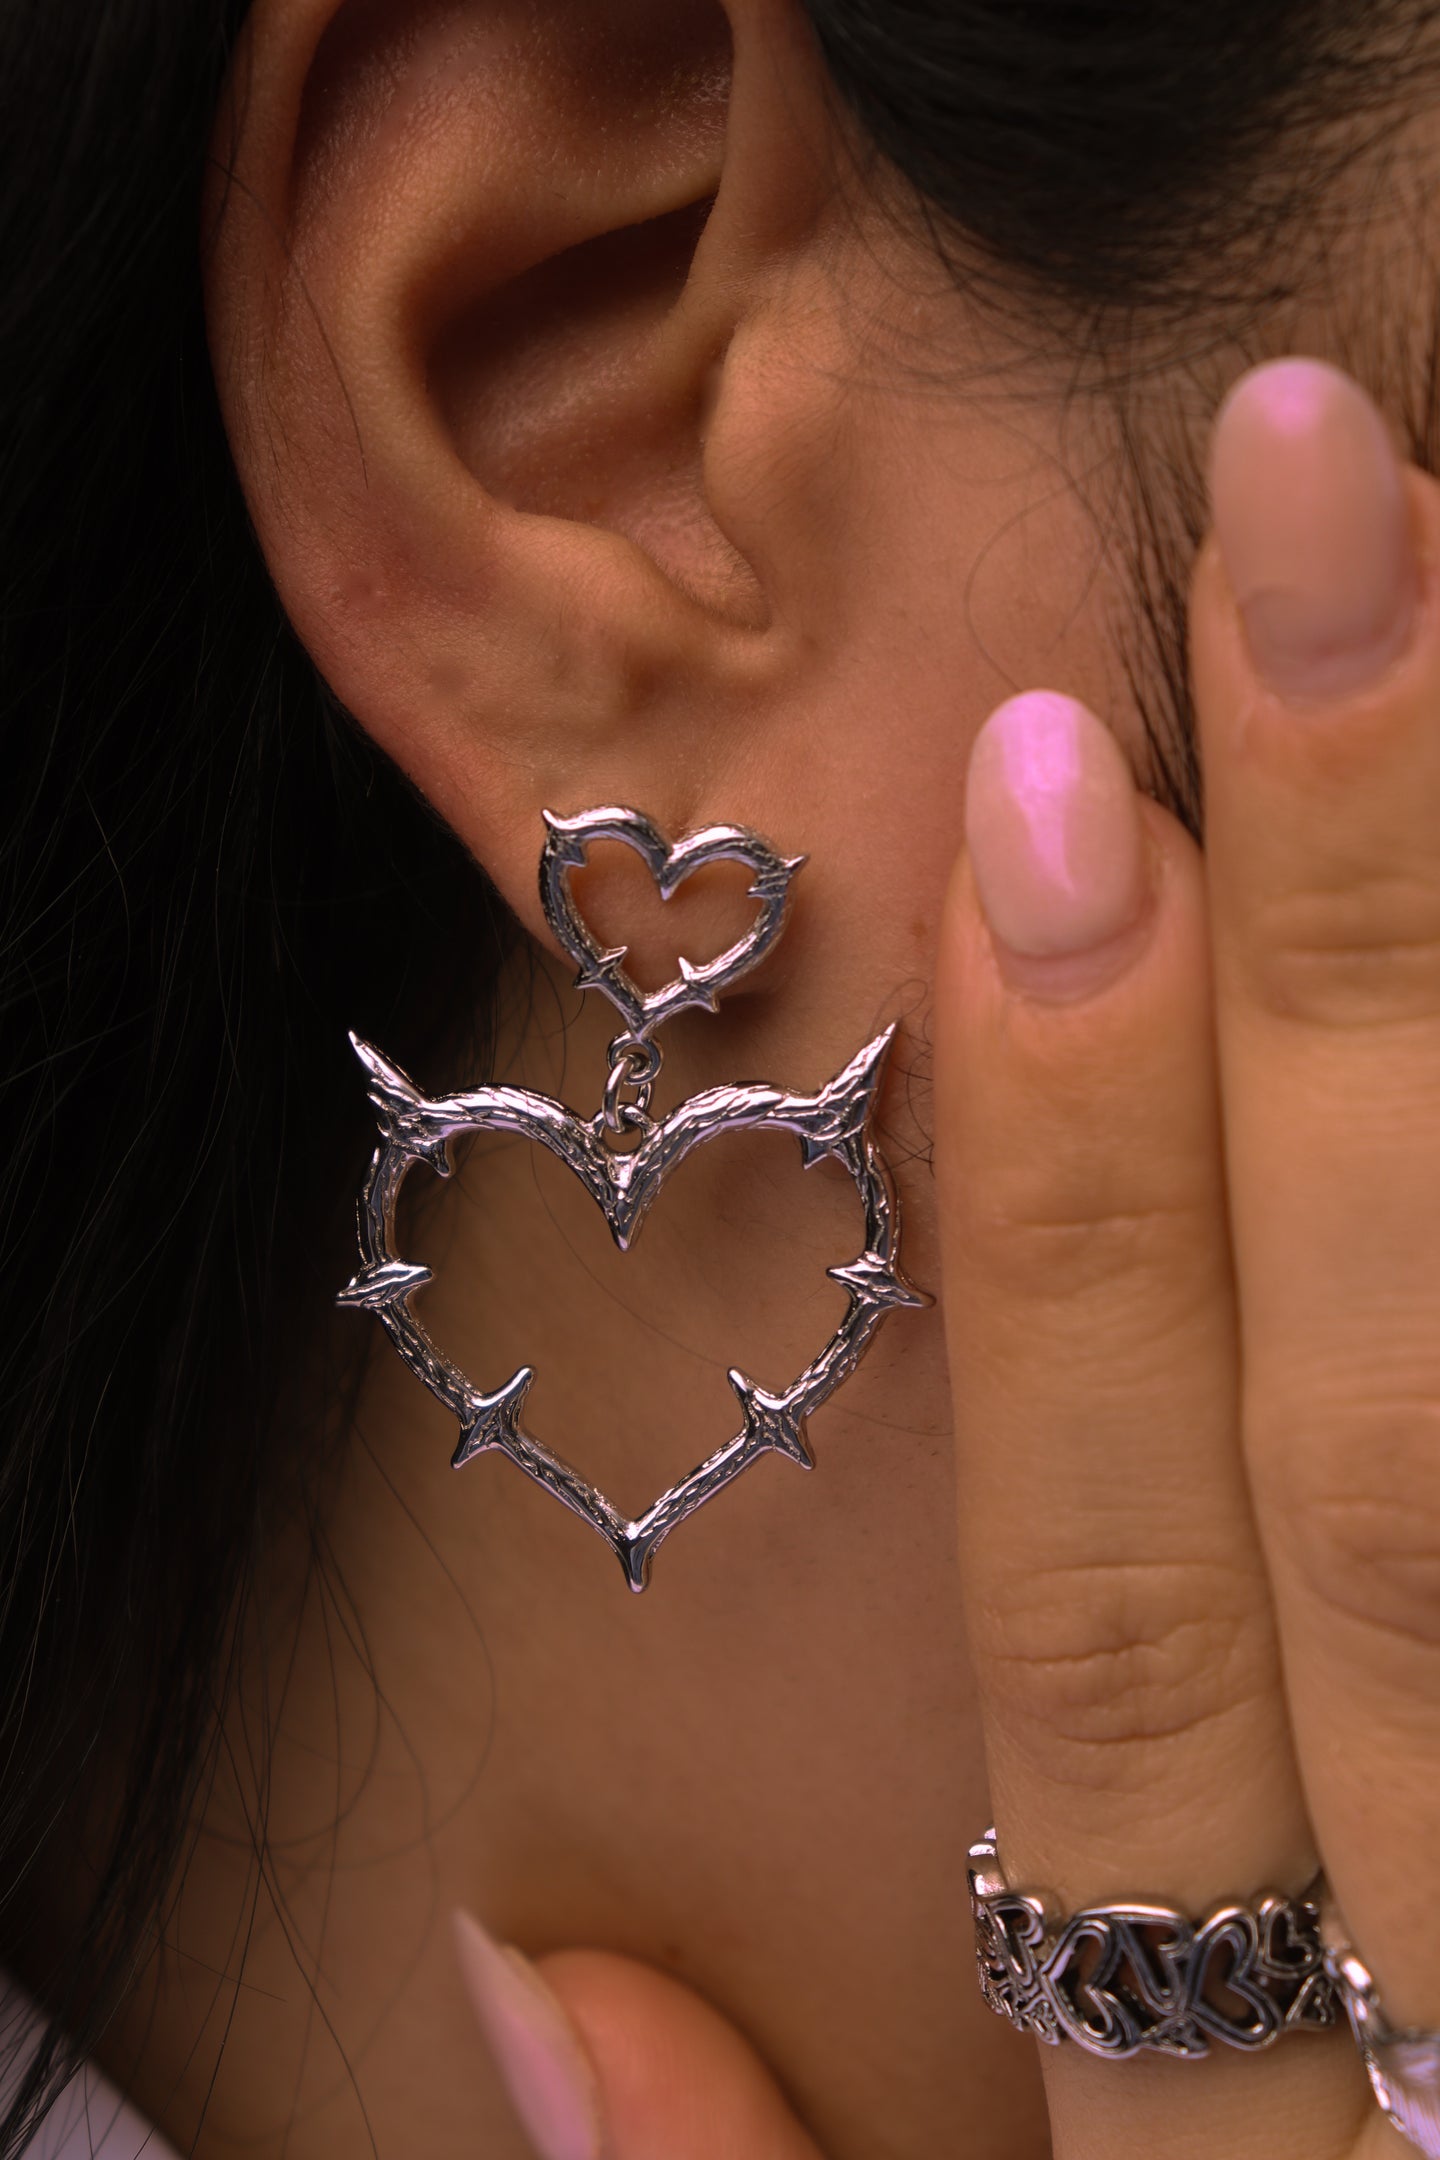 Torturous Love Earrings - Fashion Jewelry by Yordy.